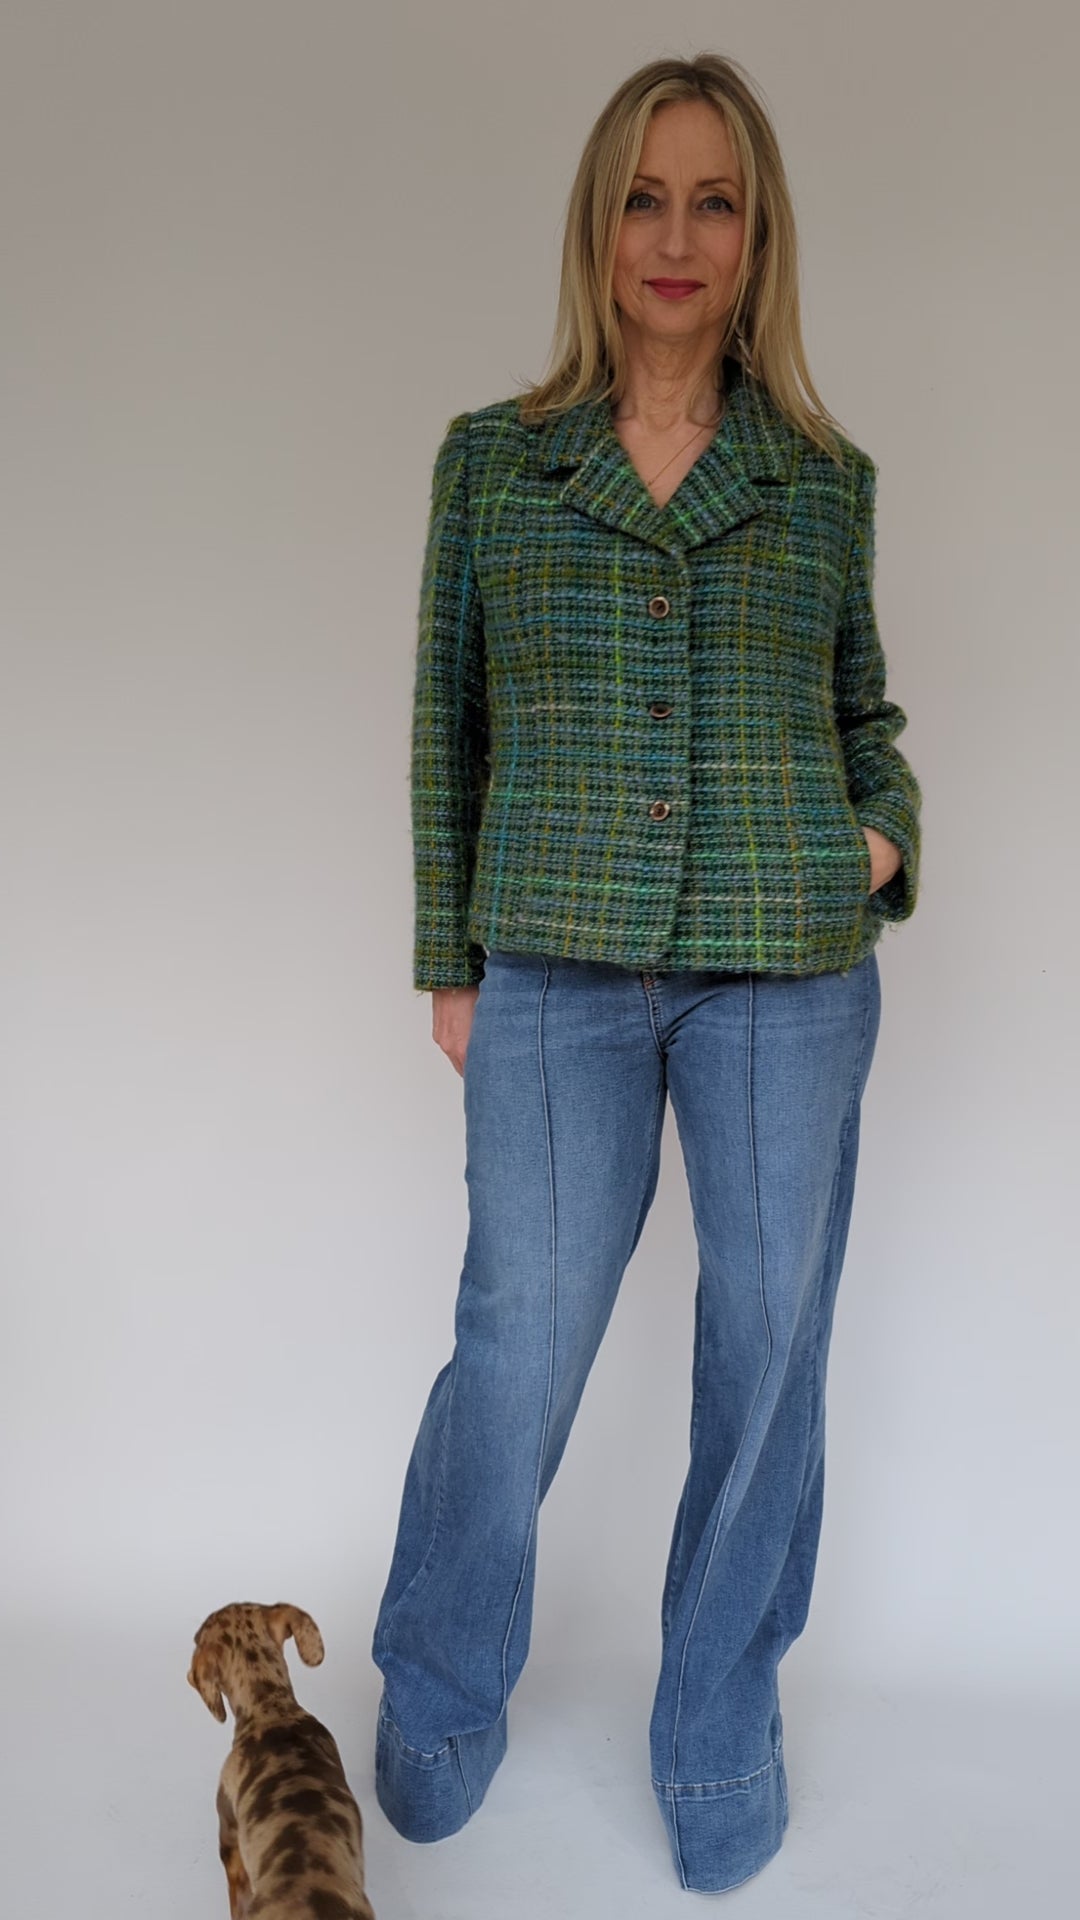 video showing vintage 60s pure wool tweed jacket